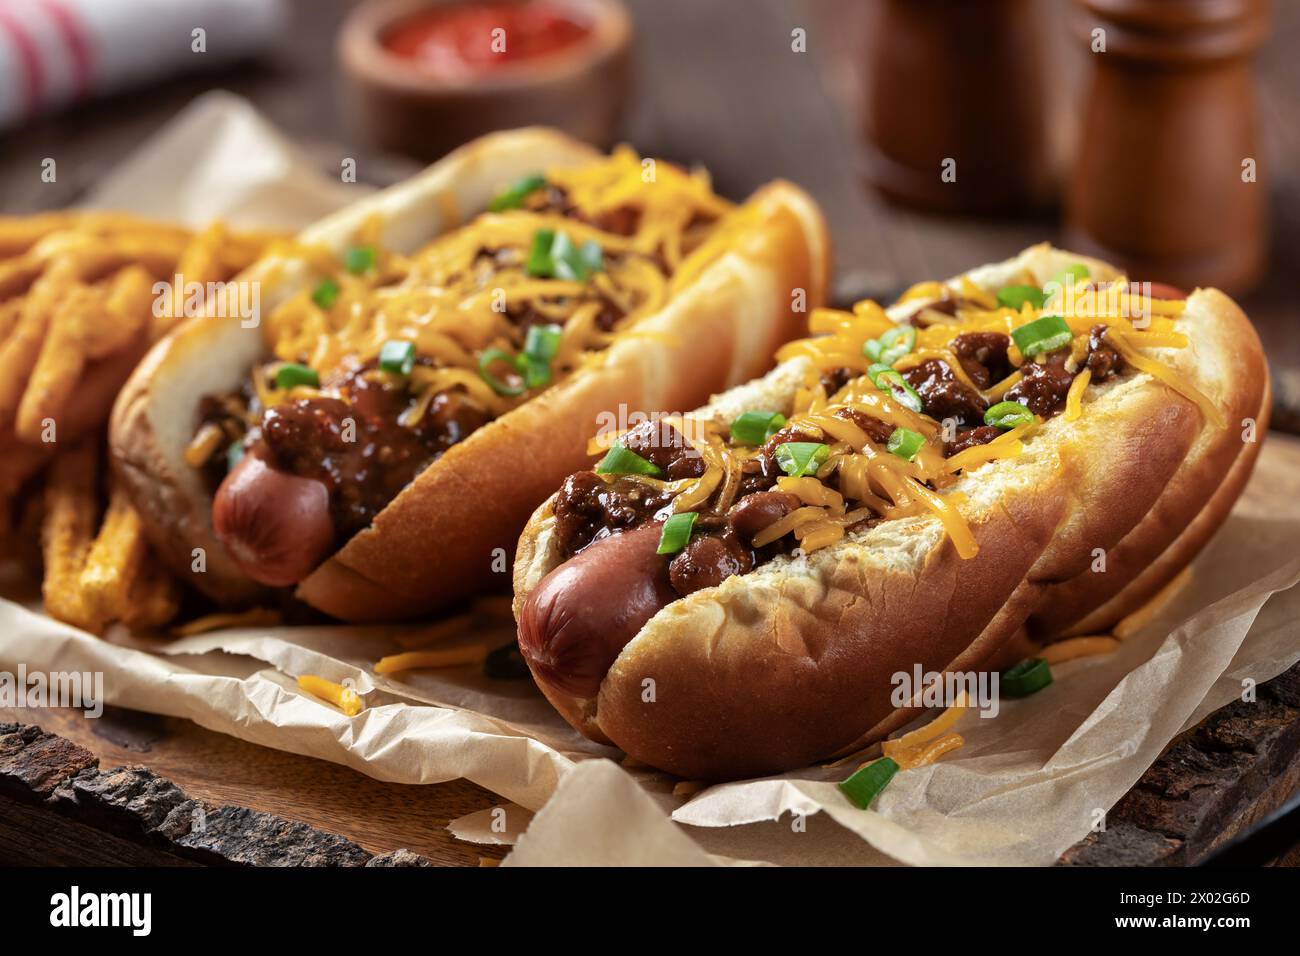 Zwei Chili Hot Dogs mit geriebenem Cheddar, gehackten grünen Zwiebeln und gewürzten Pommes frites auf einem Holztablett Stockfoto